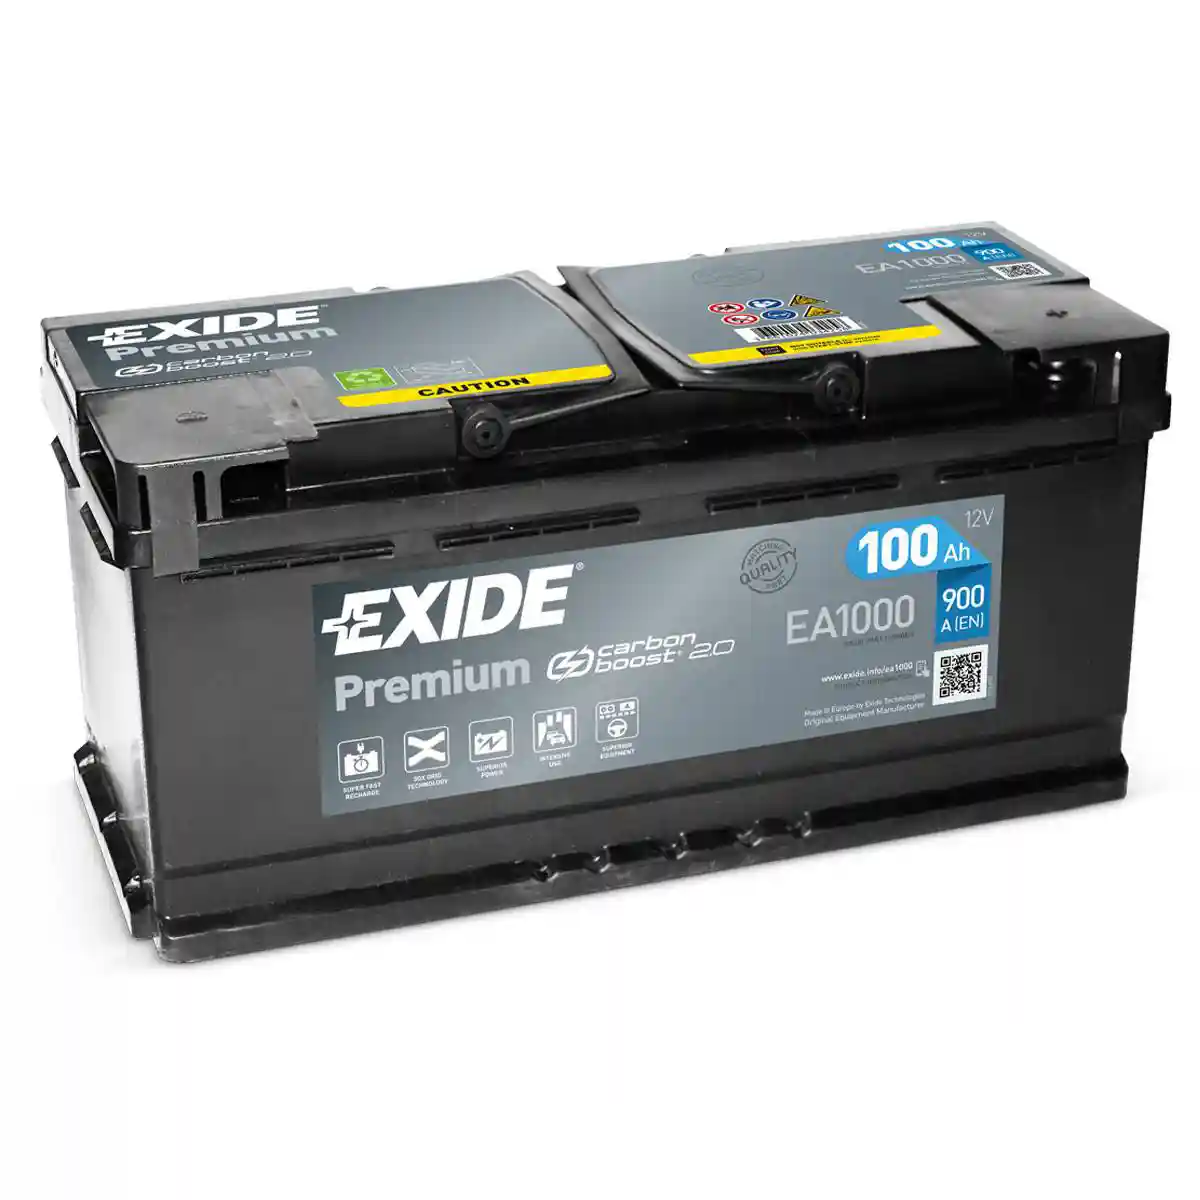 Batteria per auto Exide EA1000 Premium Carbon Boost 12V 100Ah 900A ordina  su